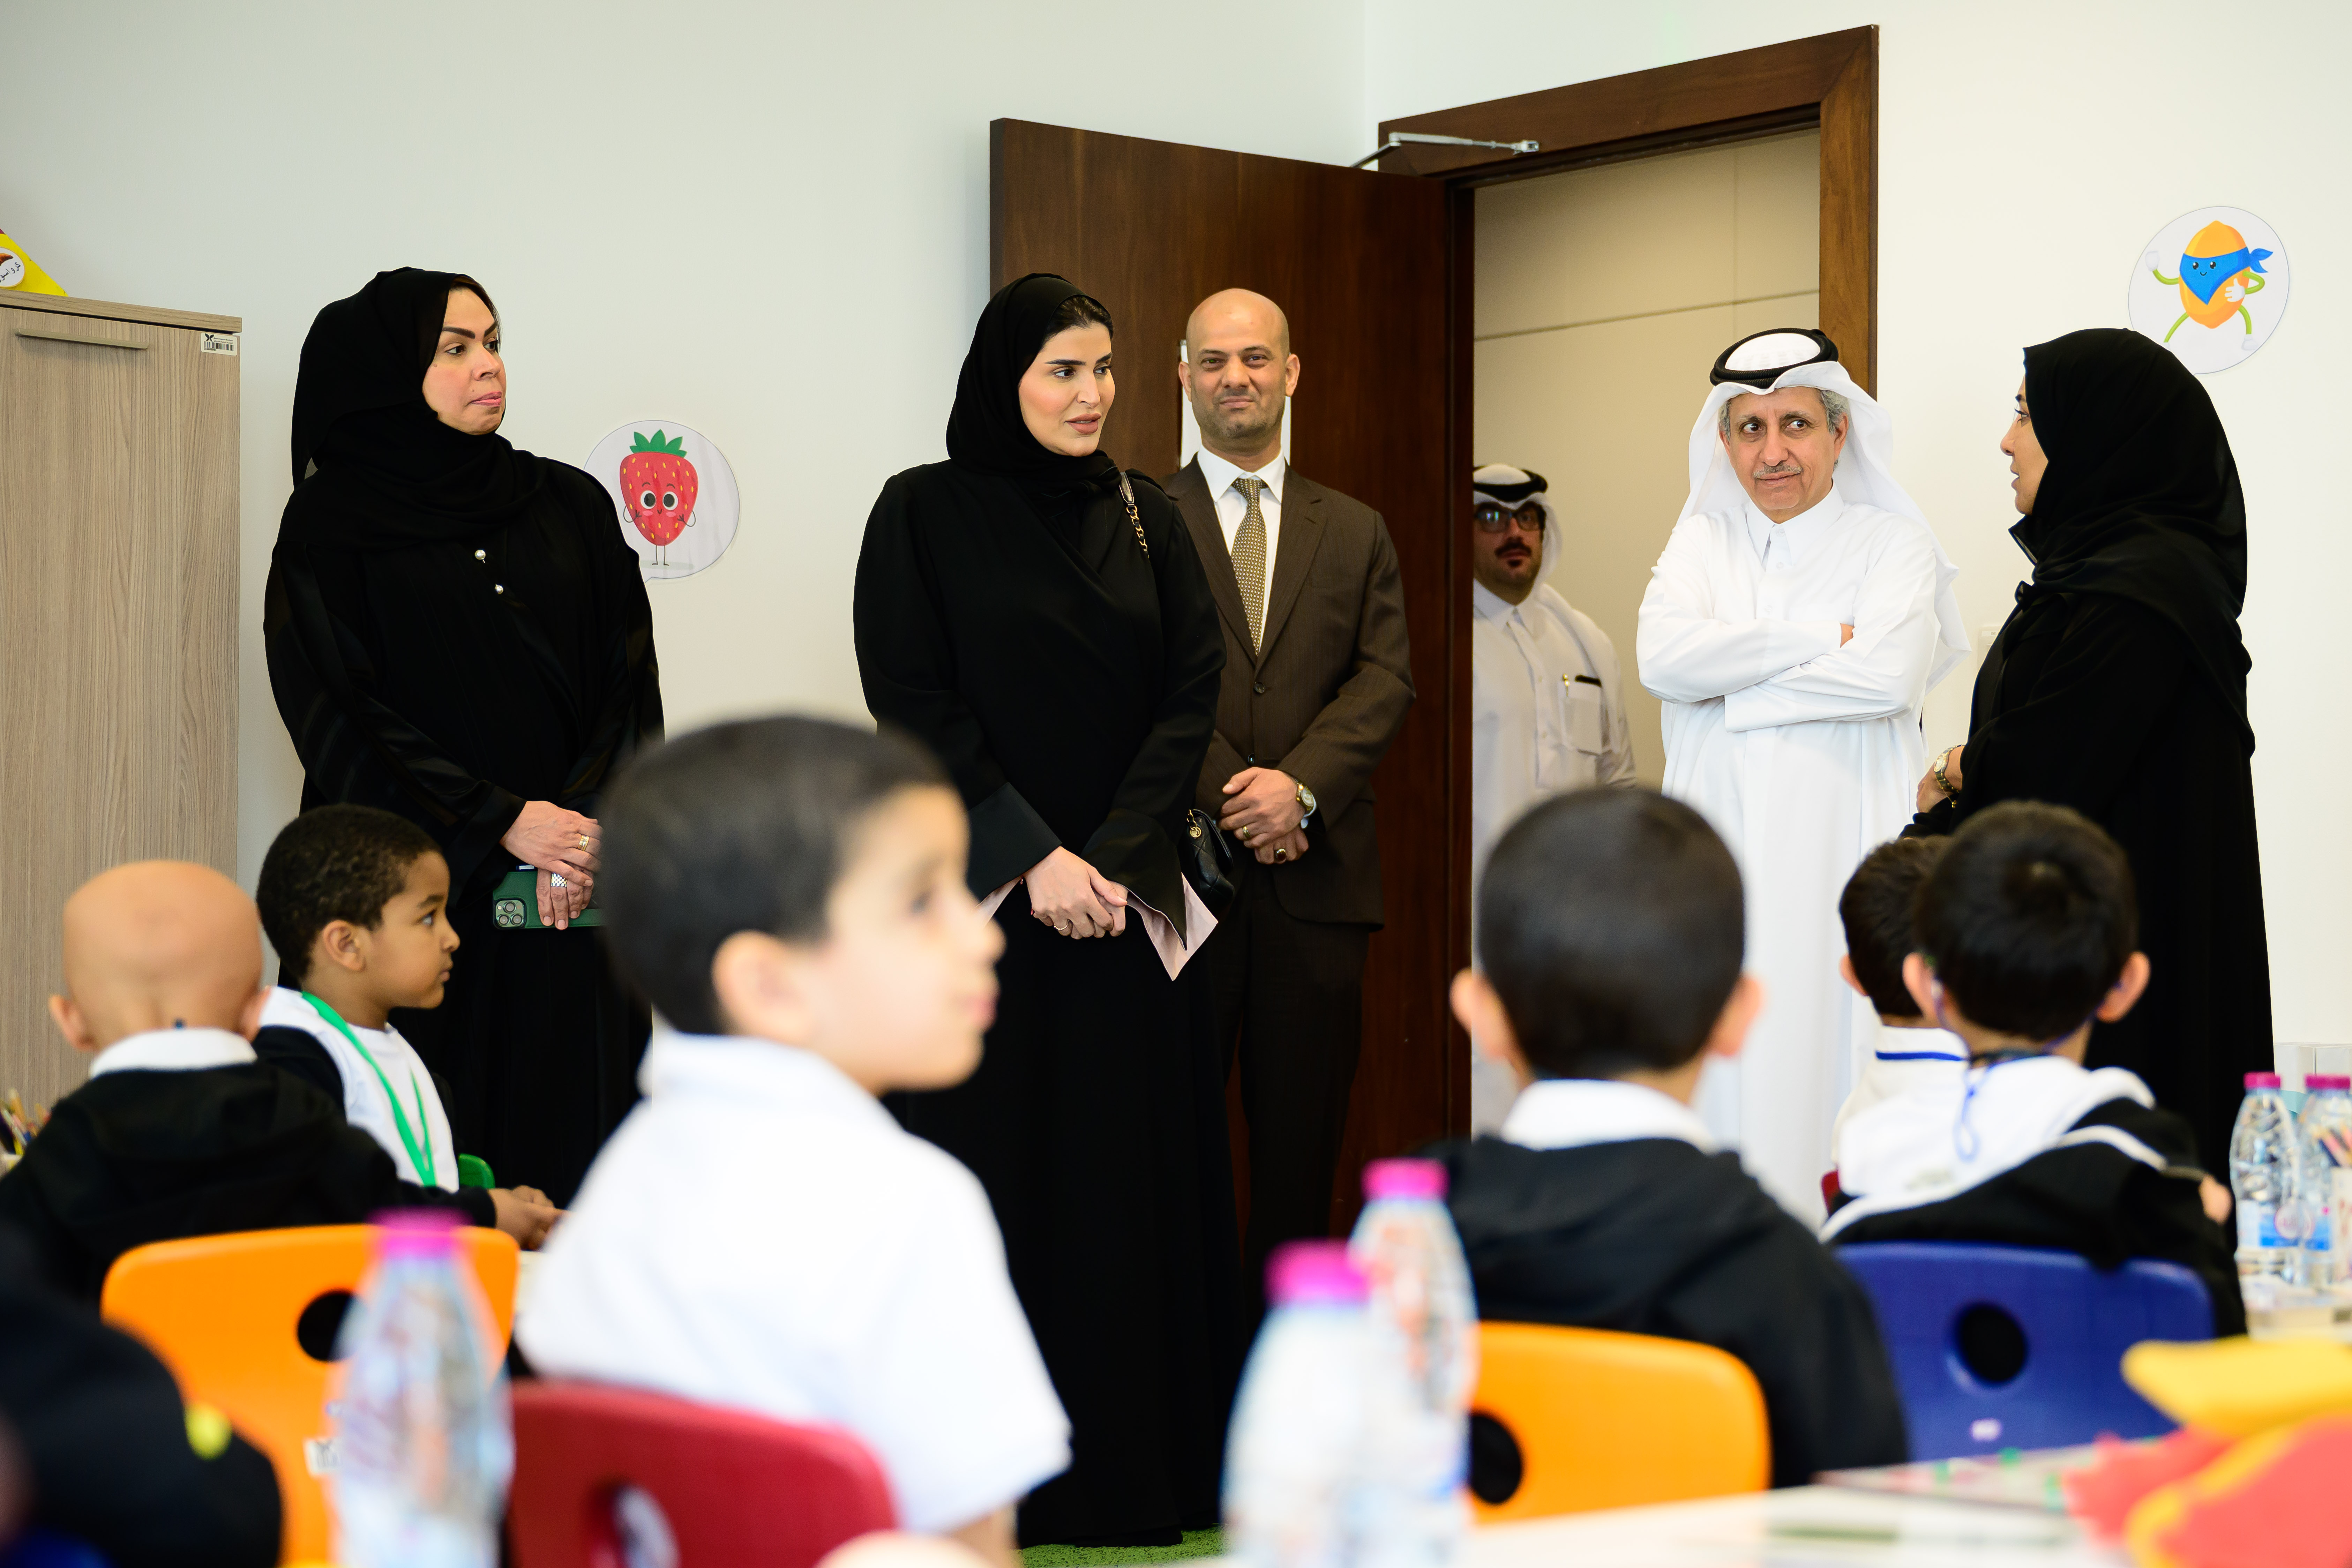 سعادة السيدة مريم بنت علي بن ناصر المسند وزيرة التنمية الاجتماعية والأسرة بزيارة الى الجمعية القطرية للسرطان